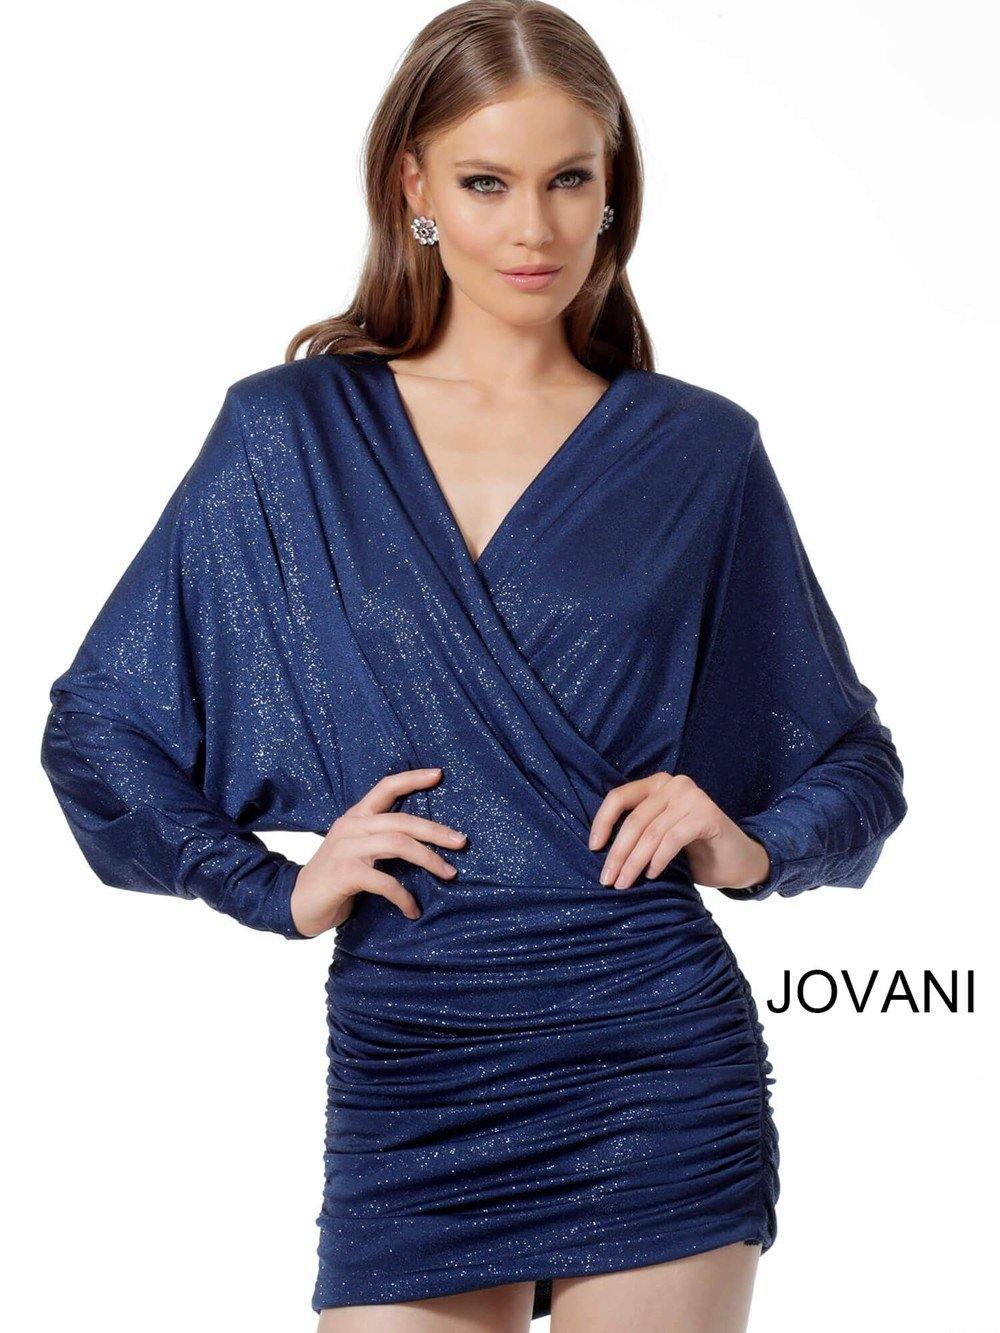 Jovani Short Formal Dress JVN1696 - The Dress Outlet